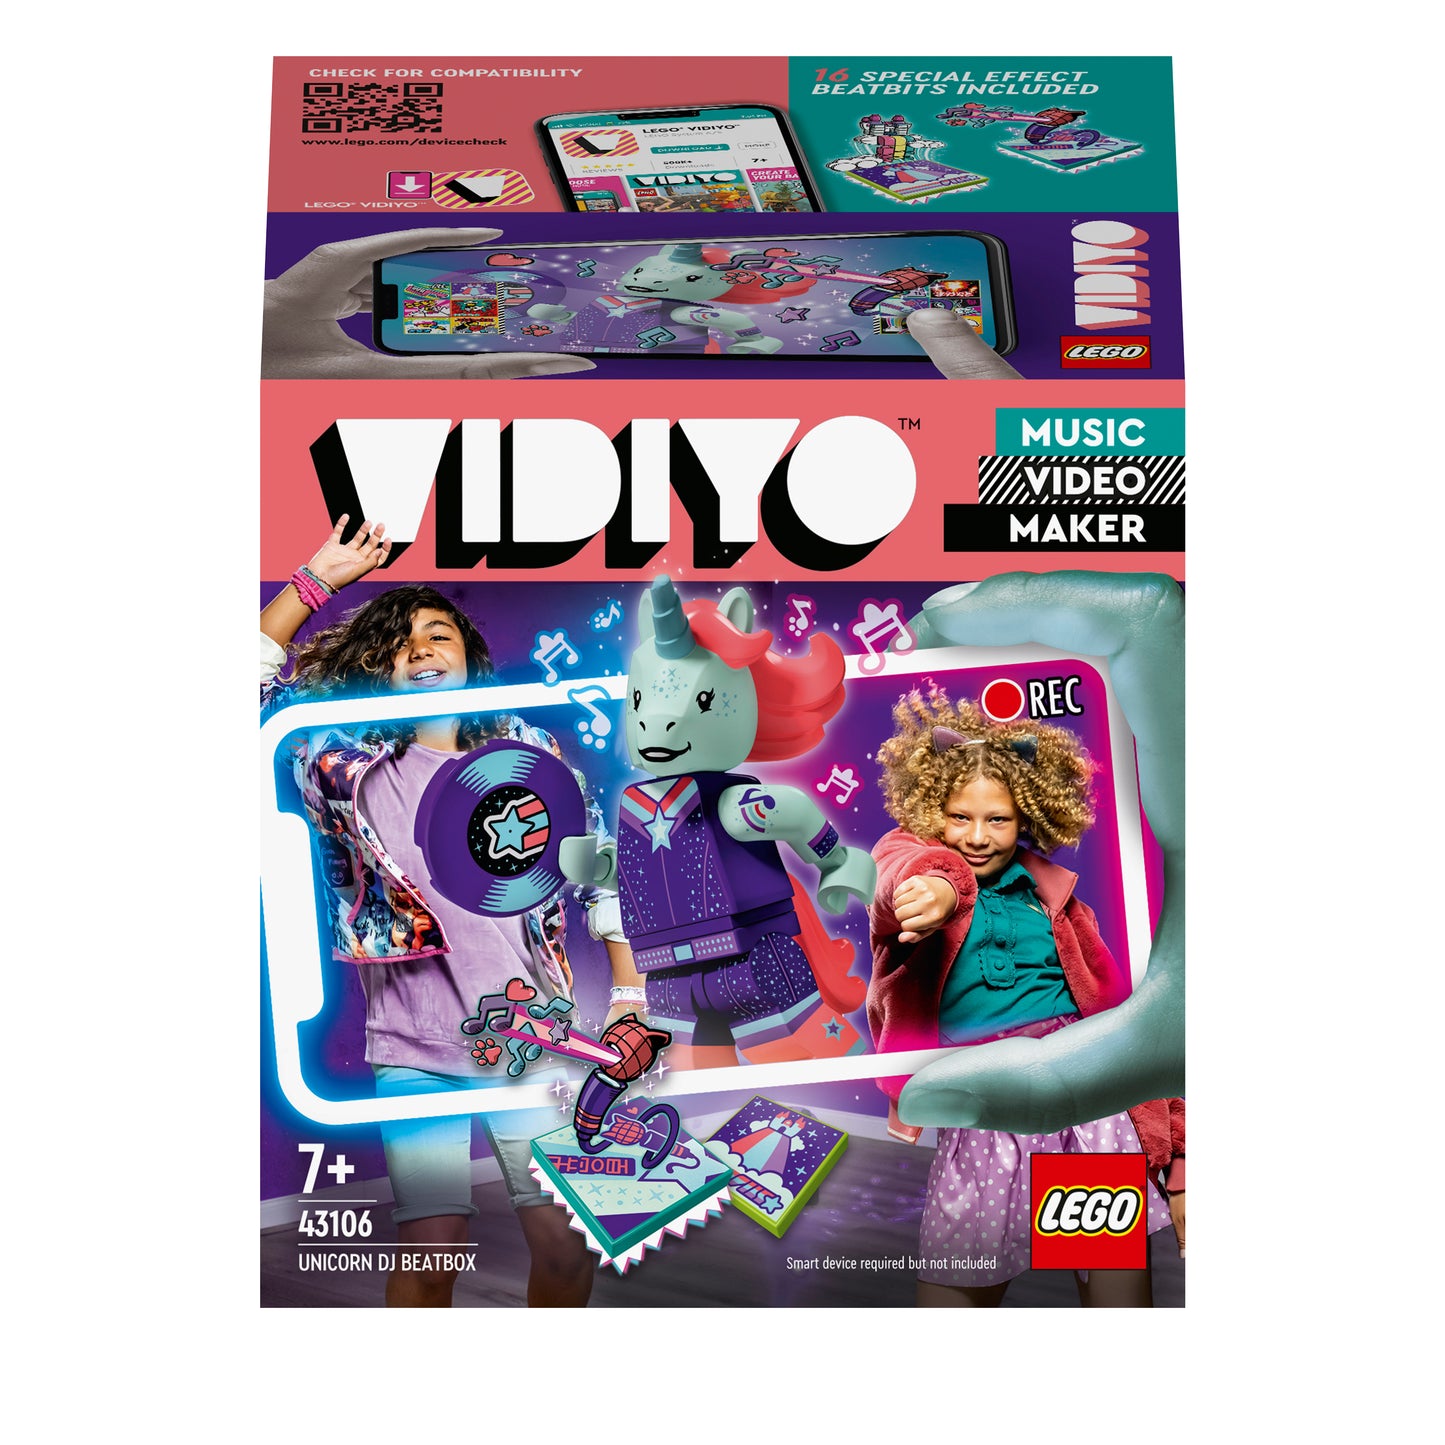 43106 LEGO Vidiyo - Unicorn DJ BeatBox